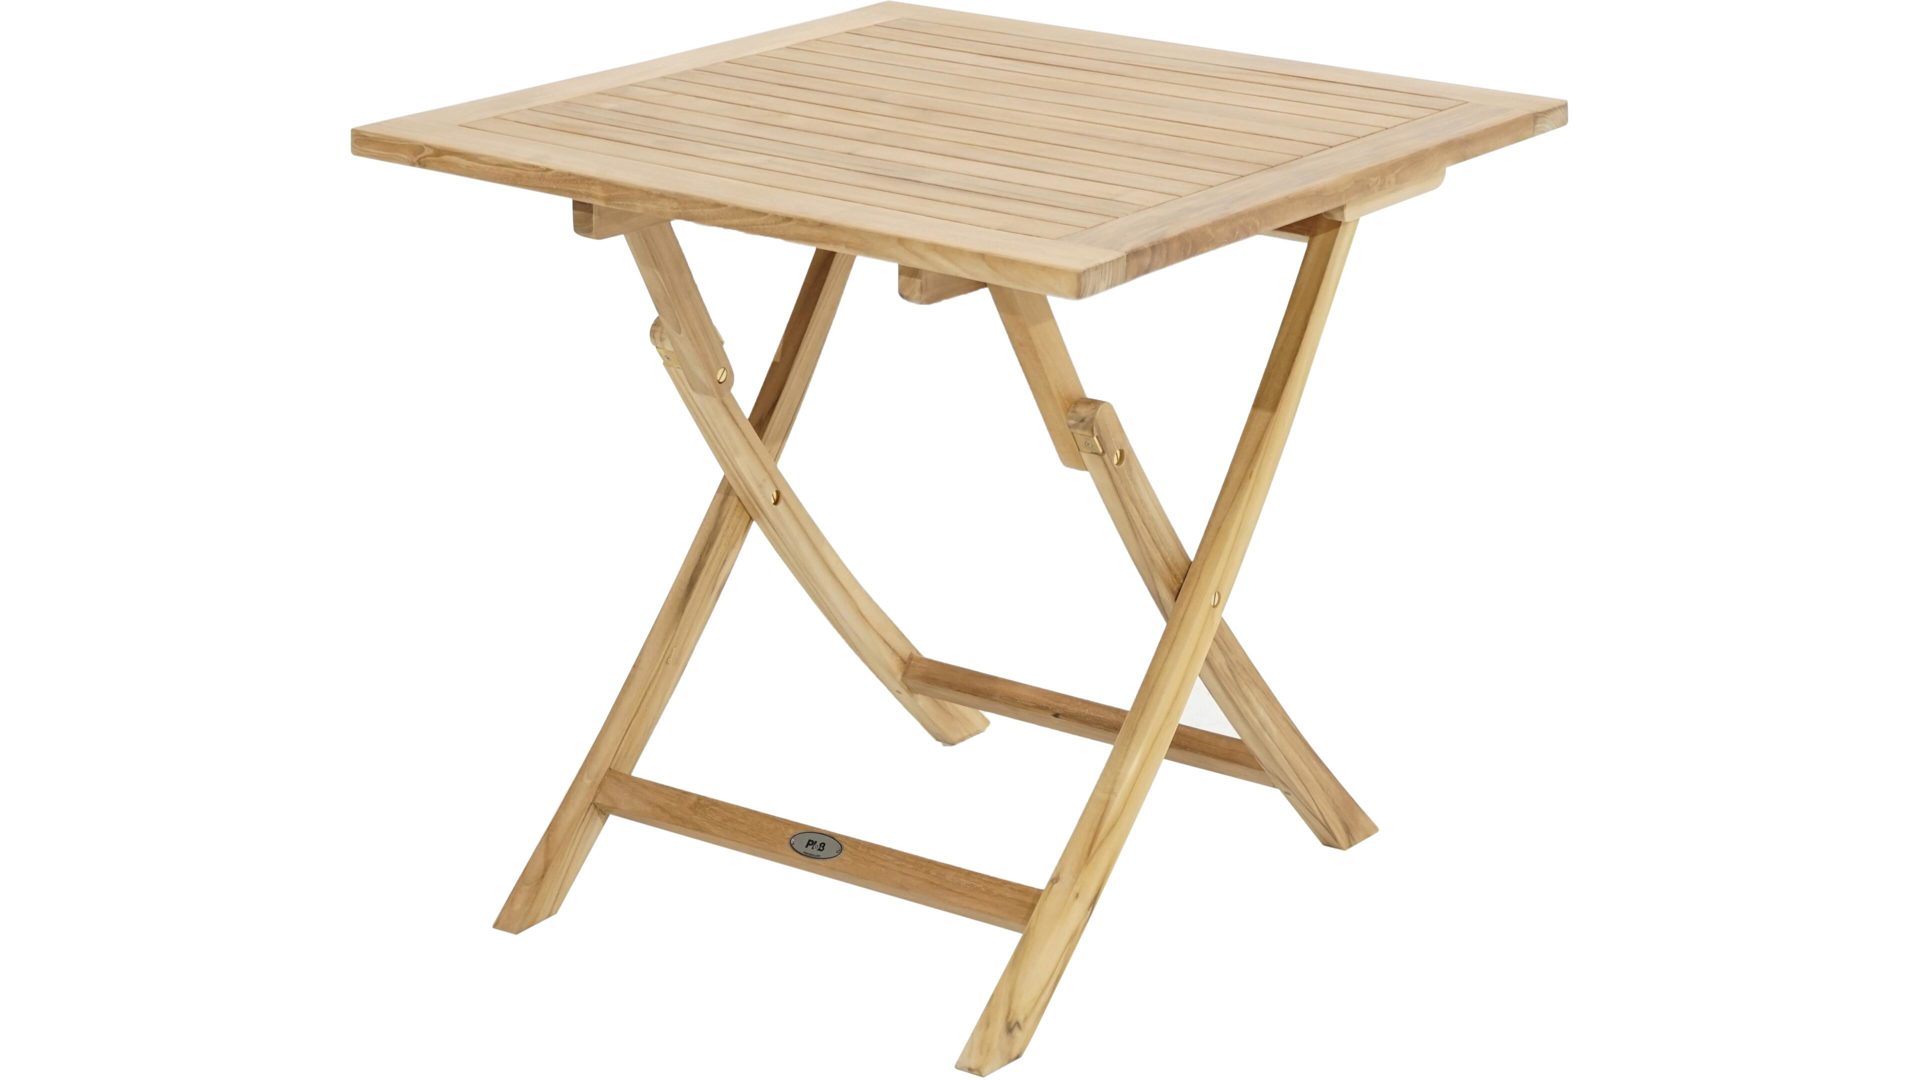 Gartentisch Ploß aus Holz in Holzfarben Ploß® Klapptisch York als Gartenmöbel honigfarbenes Teakholz – ca. 70 x 70 cm